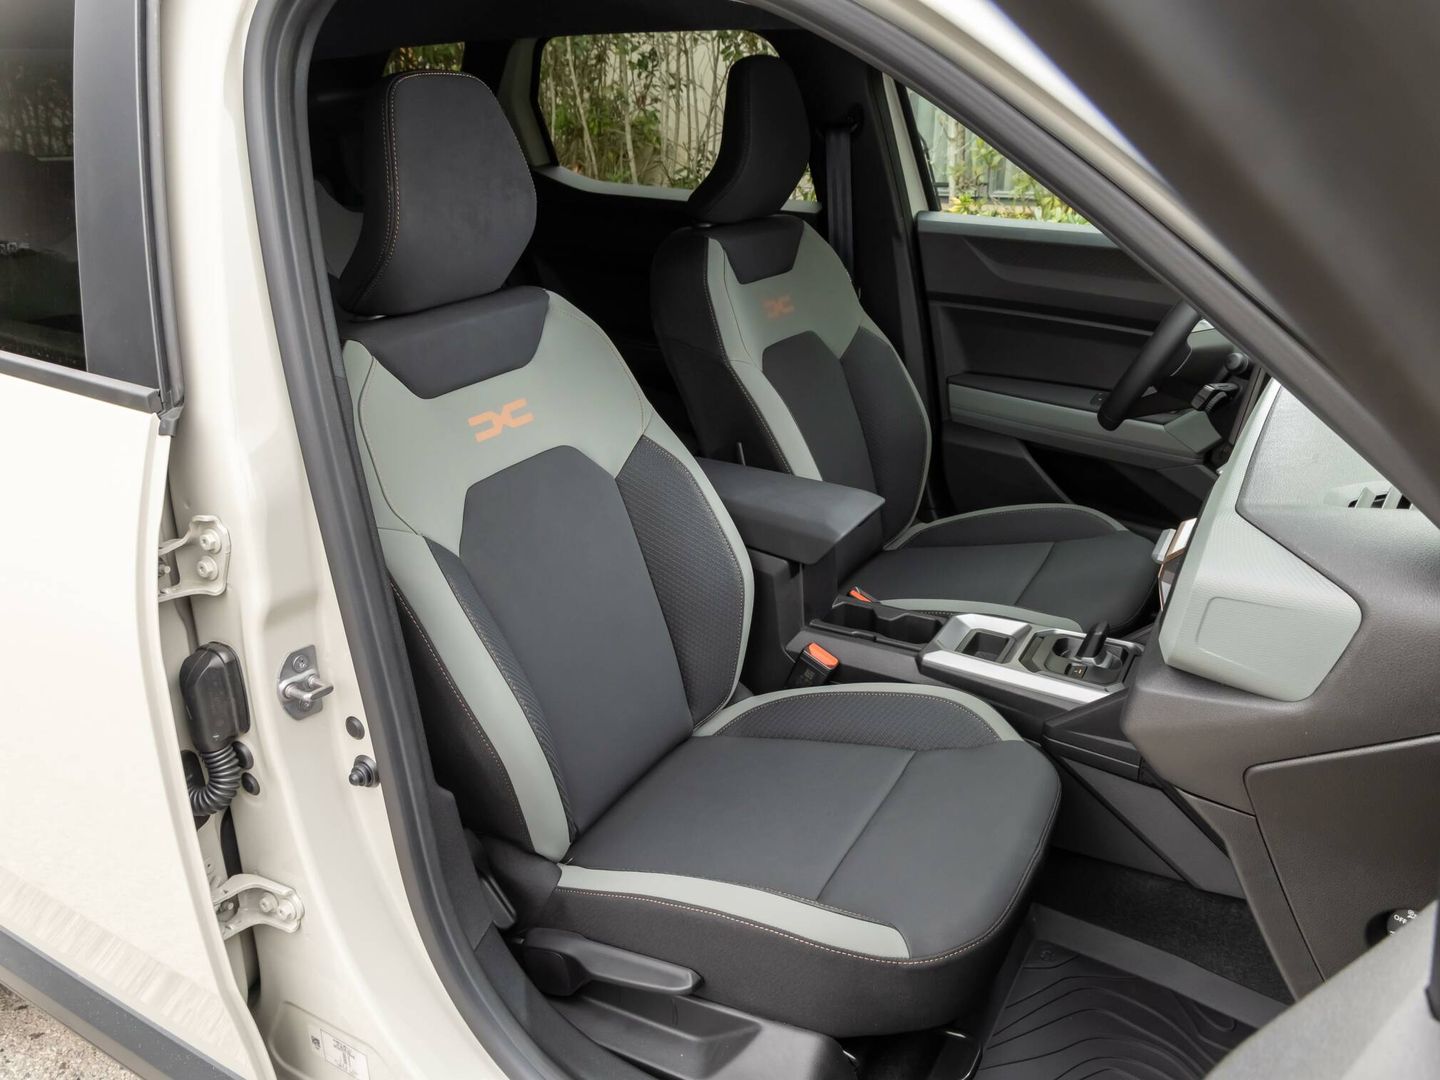 Se percibe como Dacia ha mejorado los asientos respecto a modelos anteriores de la marca.